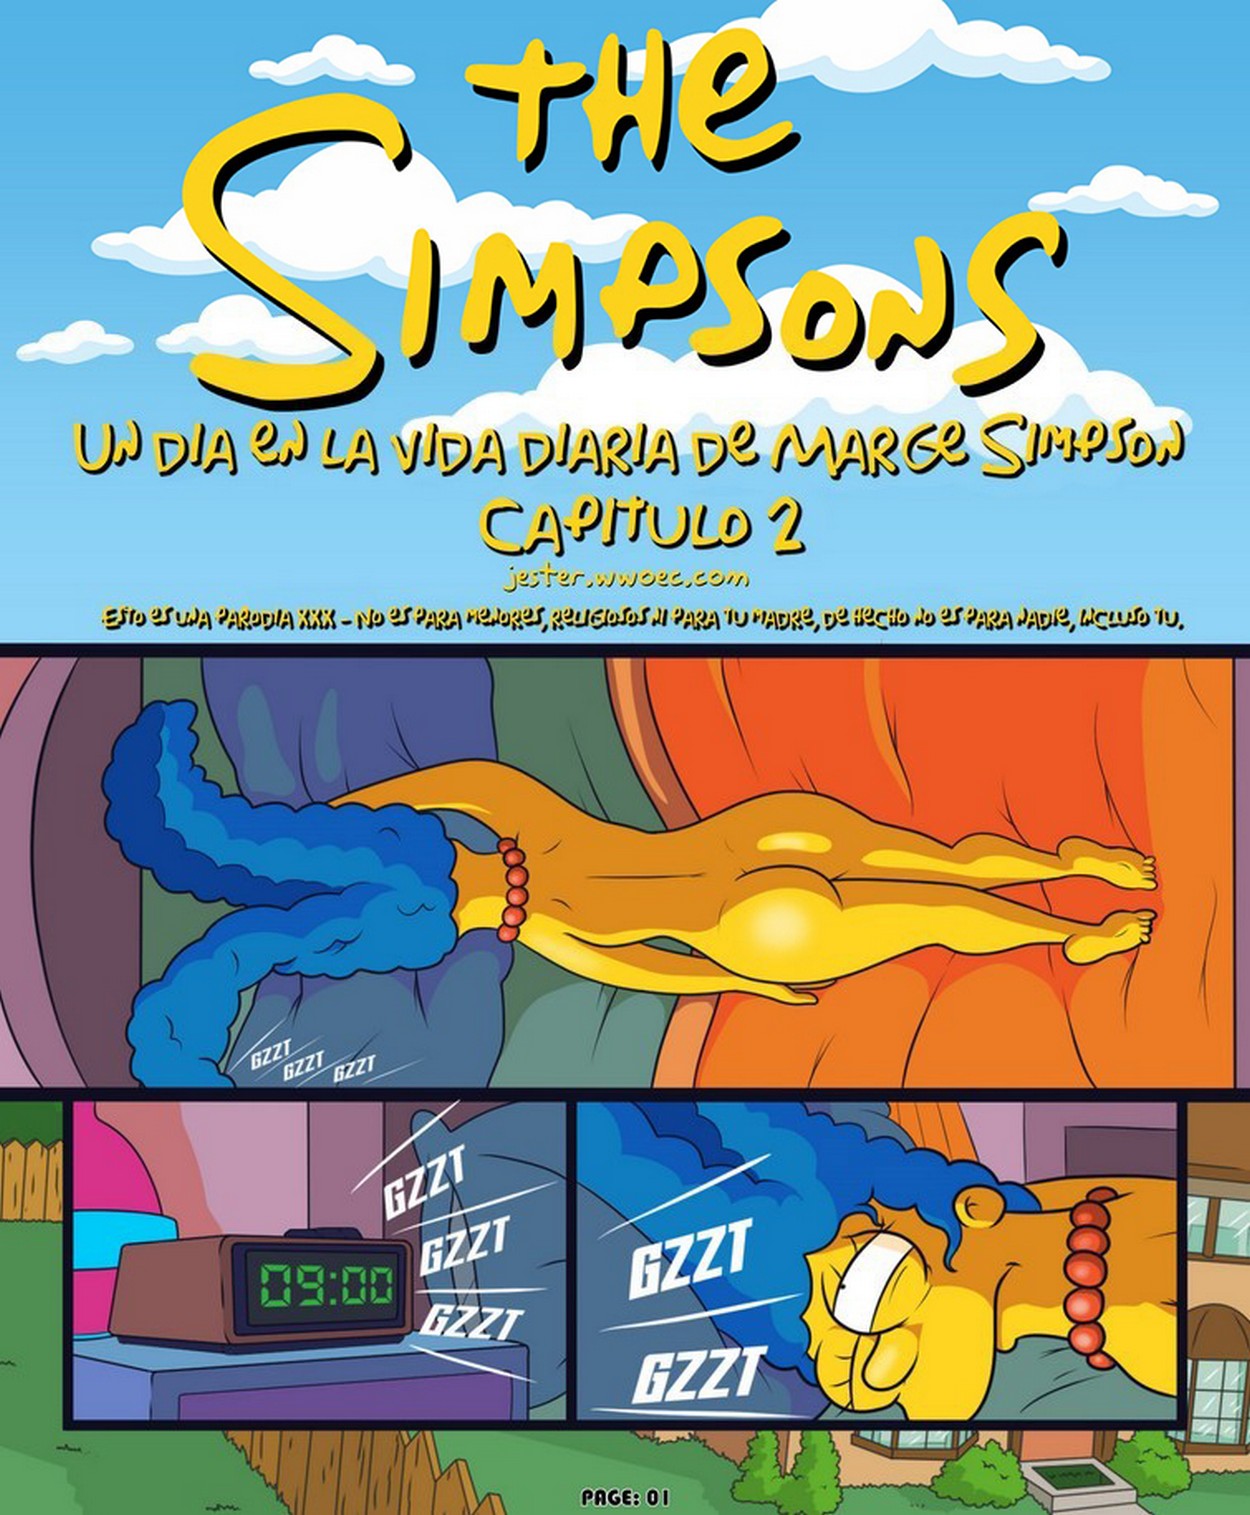 Un Dia en la Vida de Marge Simpsons - 0903d8af347f6f2977c60450c45eb8a2